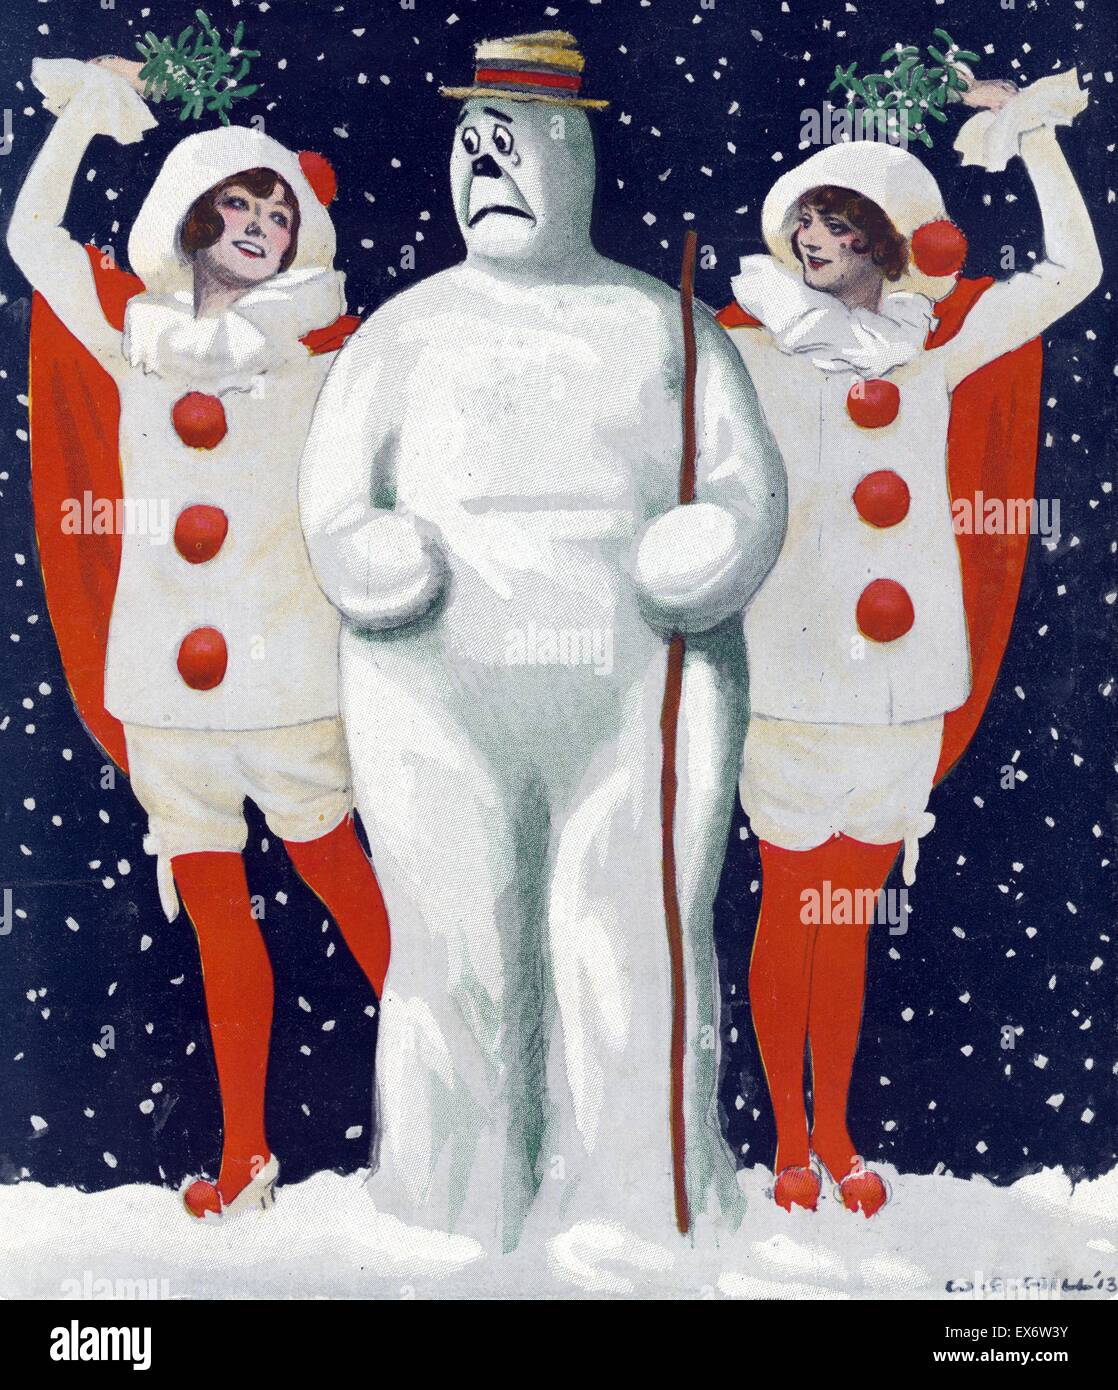 Weihnachten-Puck Künstlers William Ely Hill (1887-1962). Abbildung zeigt eine ängstliche Schneemann stehend zwischen zwei schönen jungen Frauen Clown Kostüme tragen und Mistel während der Schneedusche einen Abend über ihre Köpfe hinweg zu halten. von Keppler & Schwarzmann ich Stockfoto